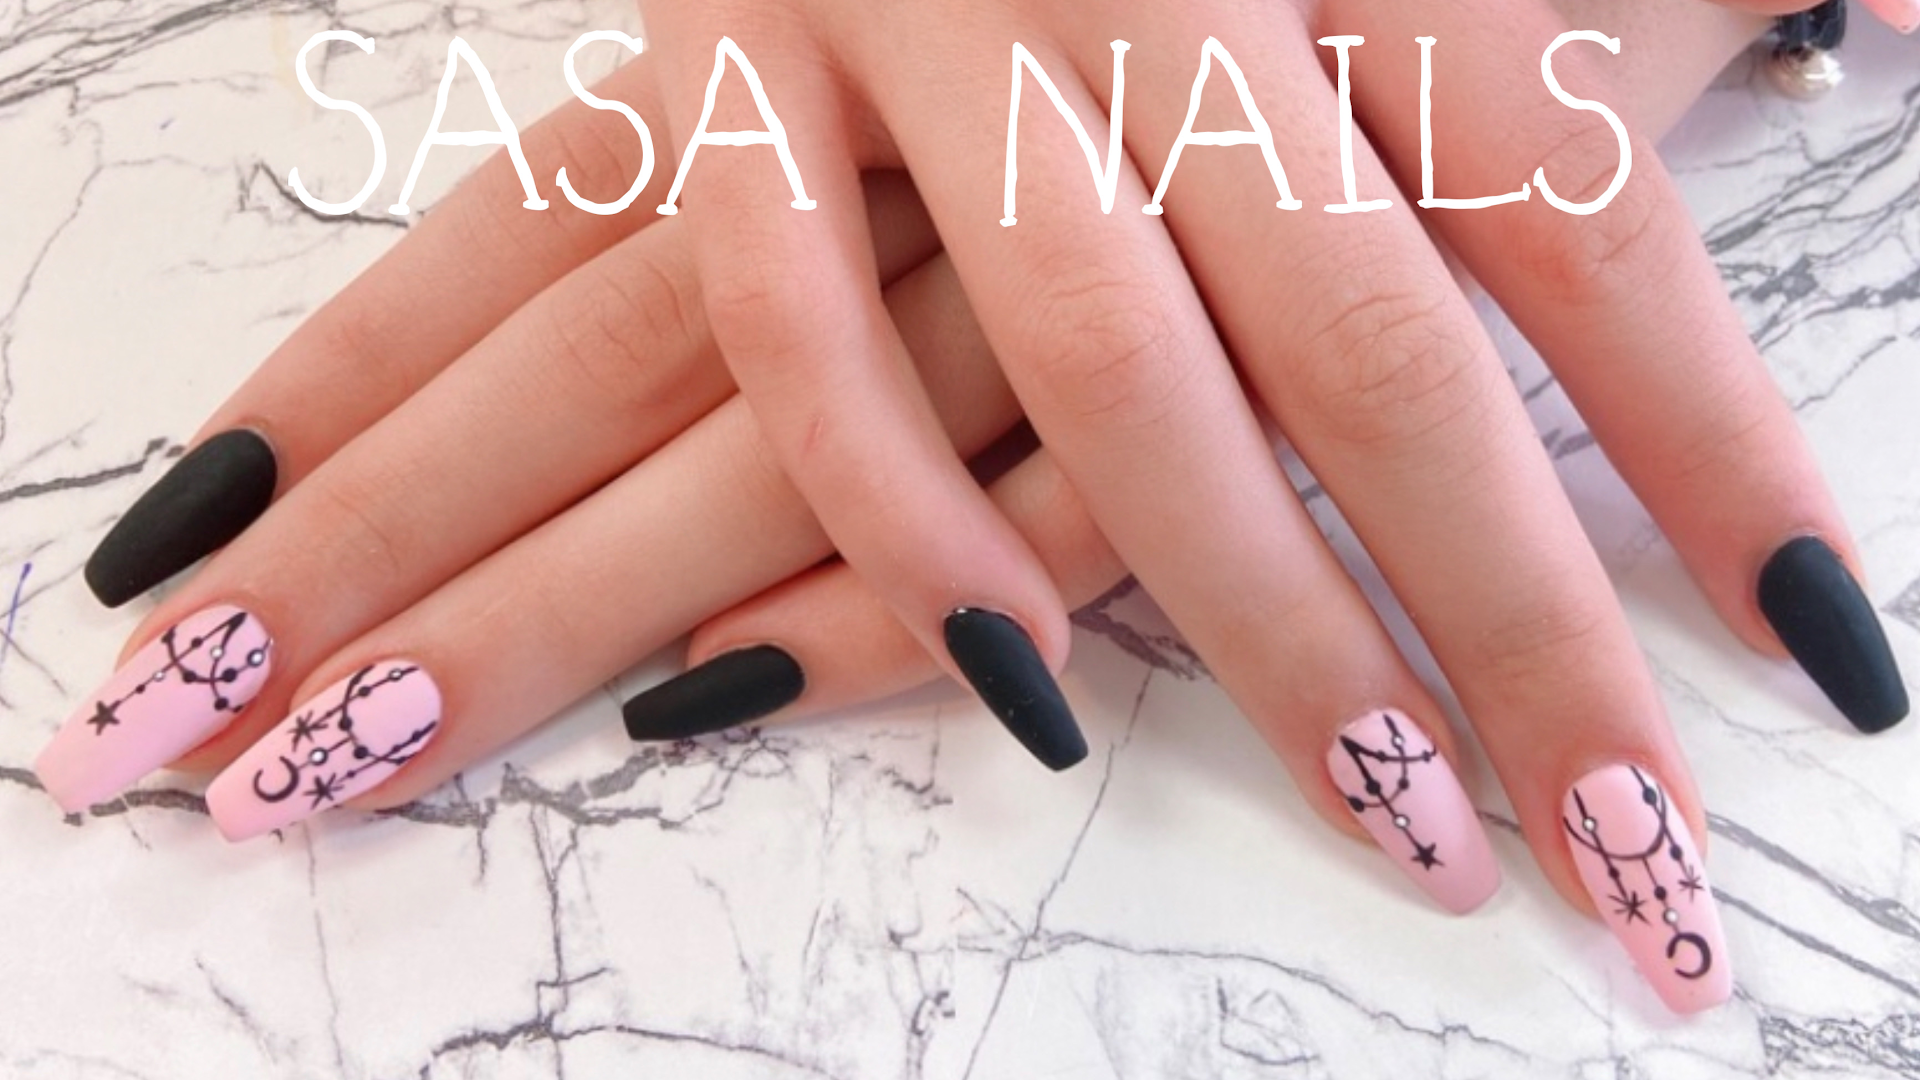 Sasa Nails